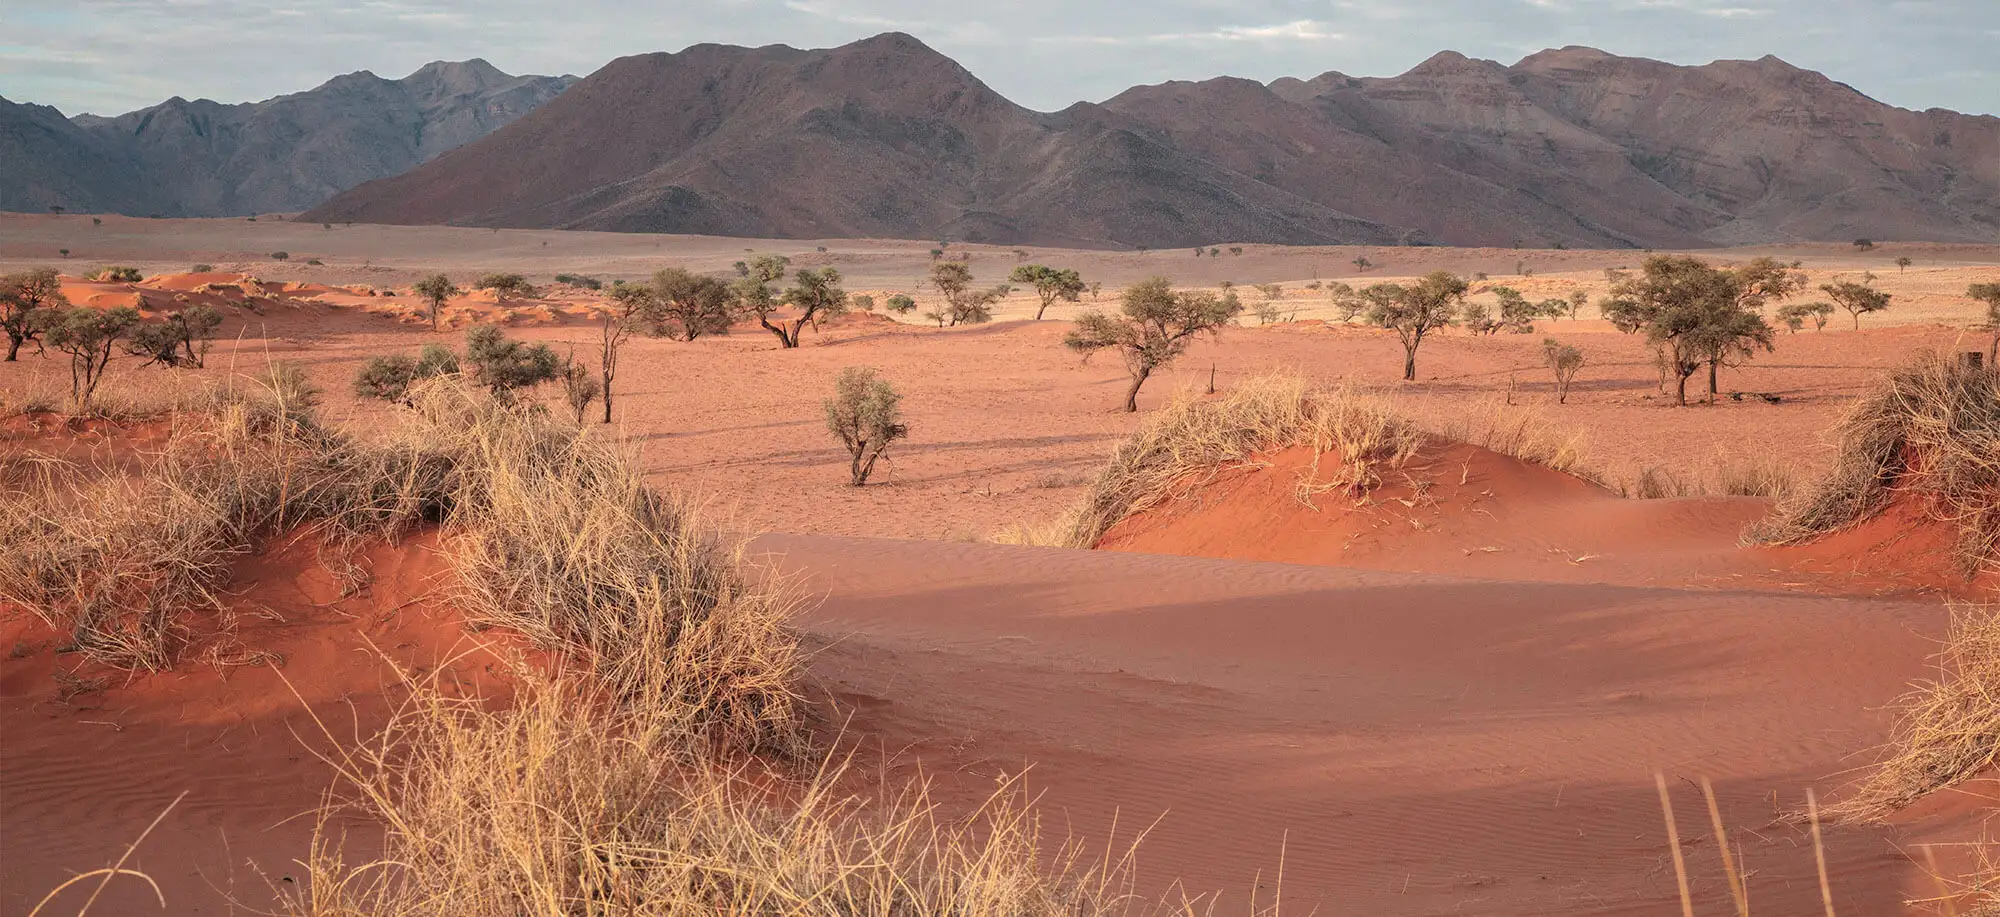  Desierto de Namib